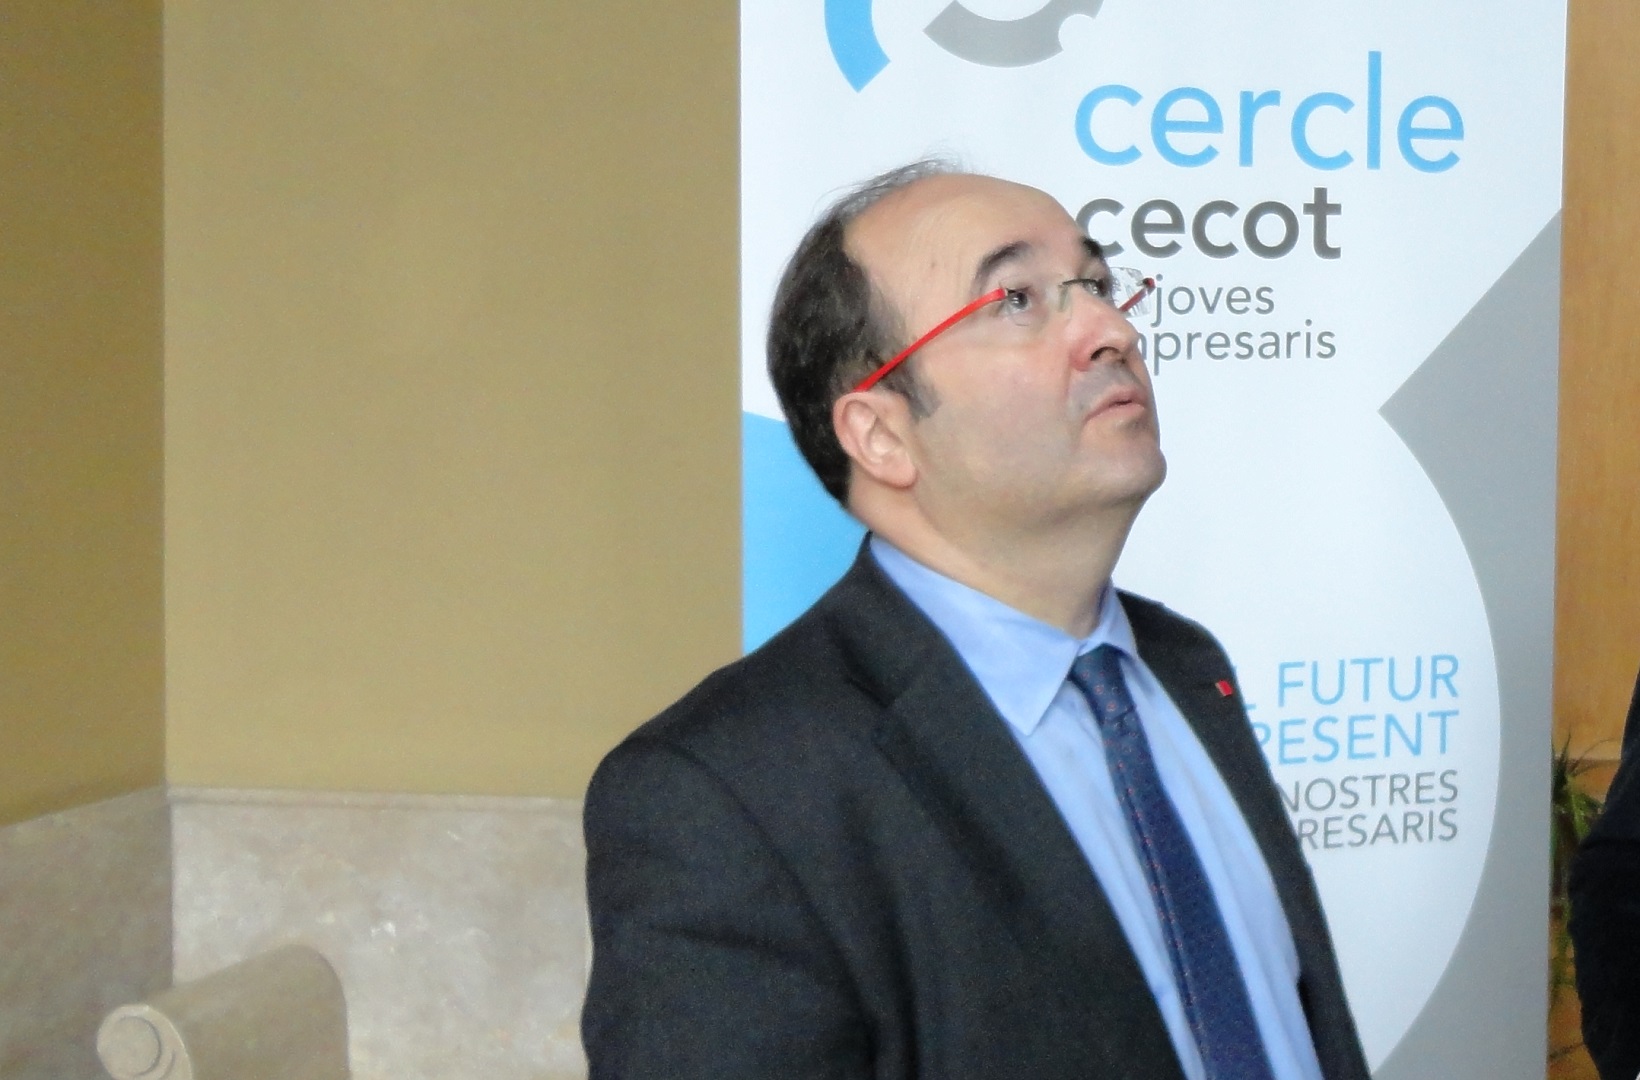 La Cecot felicita Miquel Iceta pel seu nomenament al capdavant del Ministeri de Política Territorial i espera que ajudi a revertir la infrainversió a Catalunya i acceleri el traspàs de competències pendents